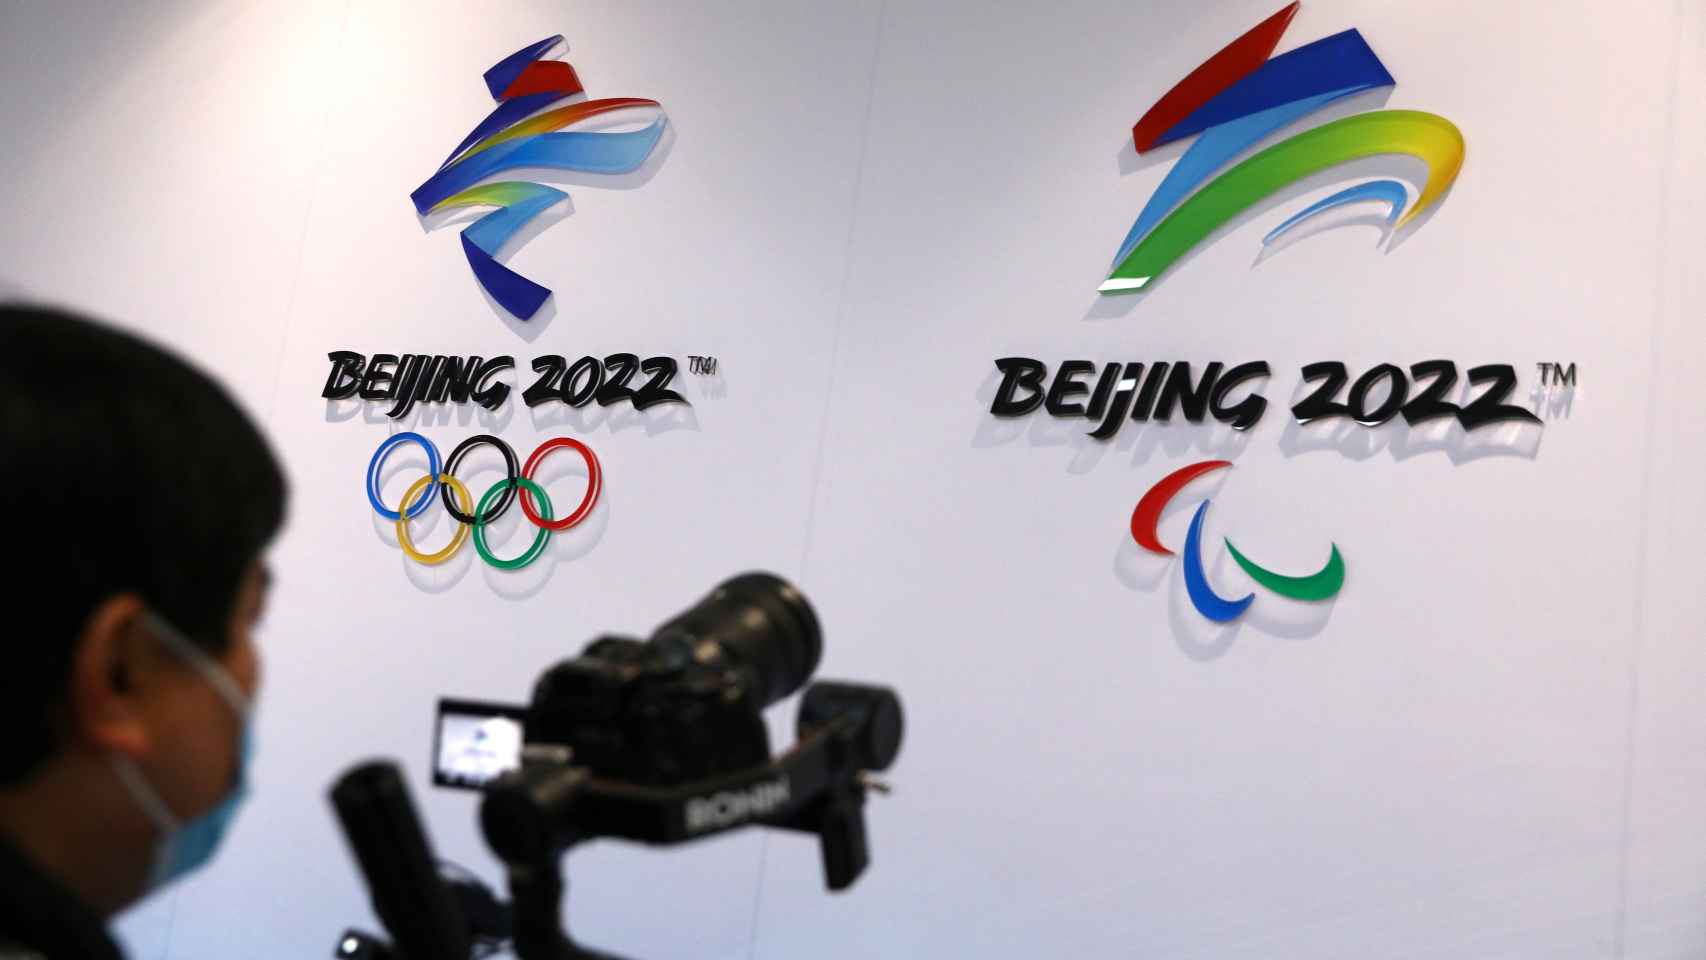 Los logos de los Juegos Olímpicos y Paralímpicos de Pekín 2022, en una infraestructura.